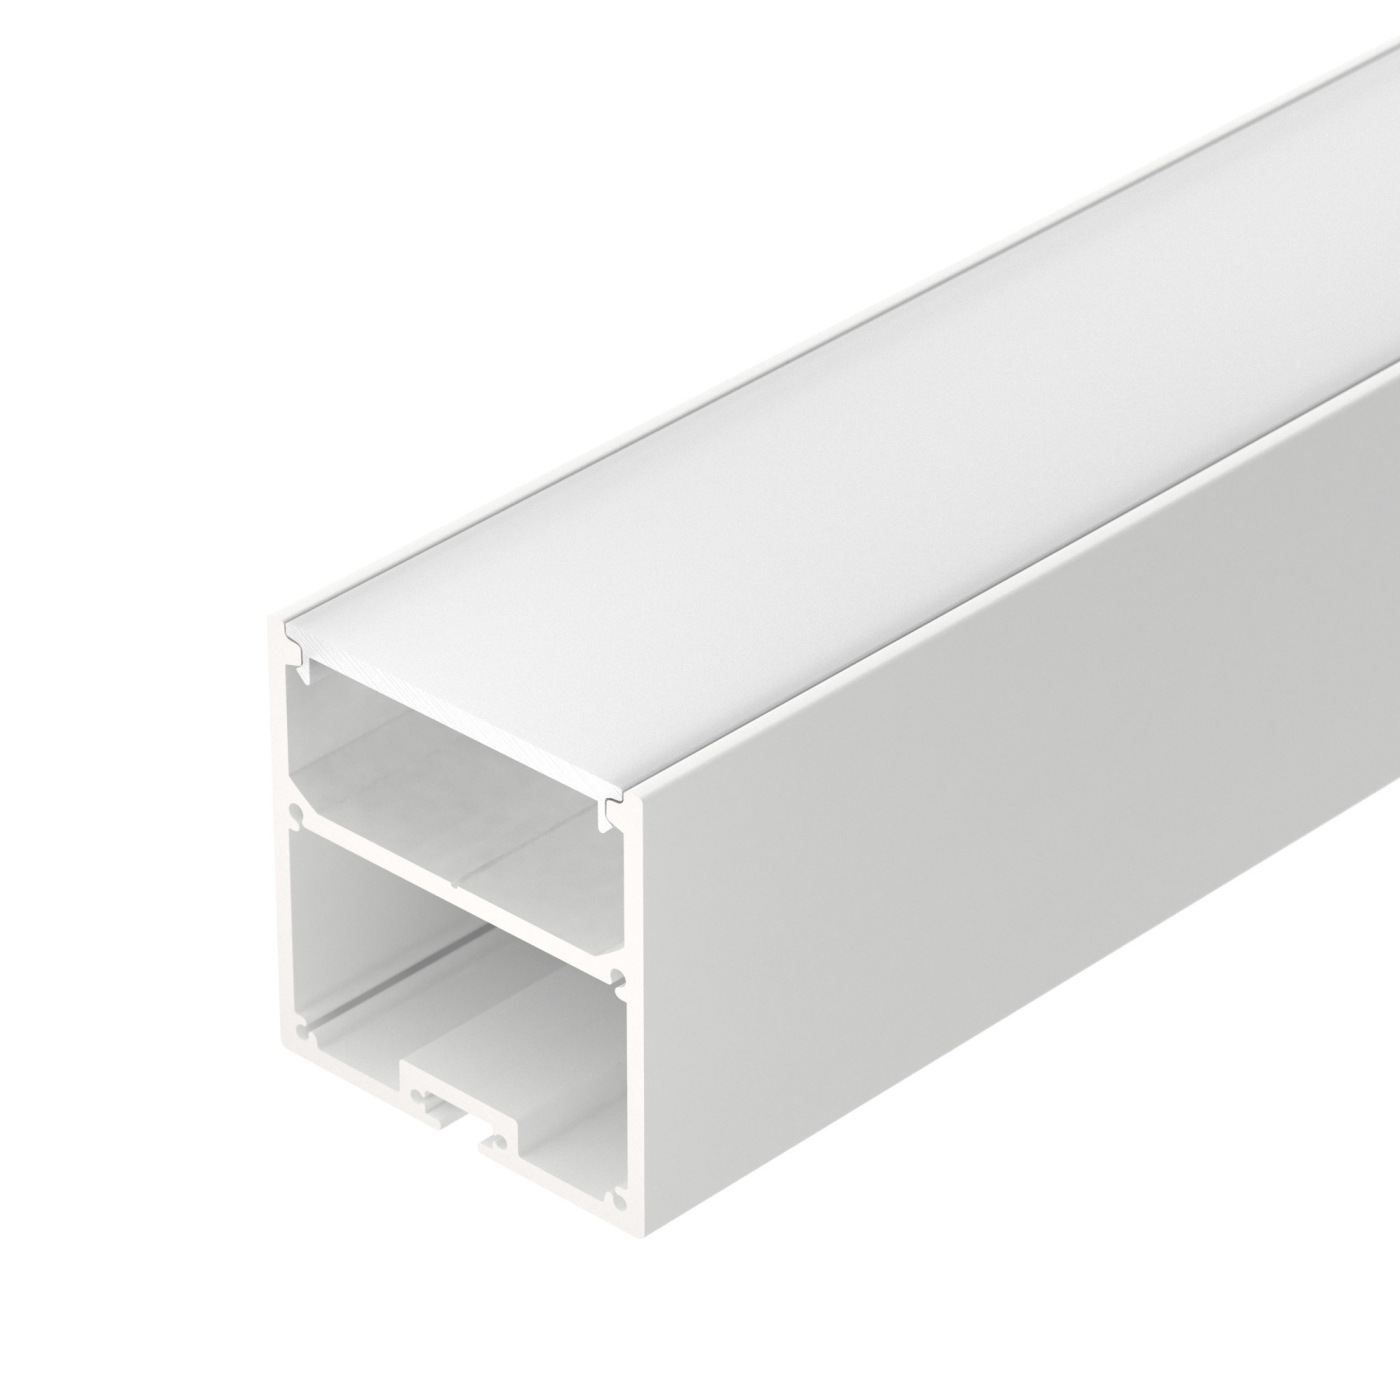 Профиль с экраном SL-LINE-5050-2500 WHITE+OPAL профиль алюминиевый накладной подвесной с отсеком для бп серебро cab266